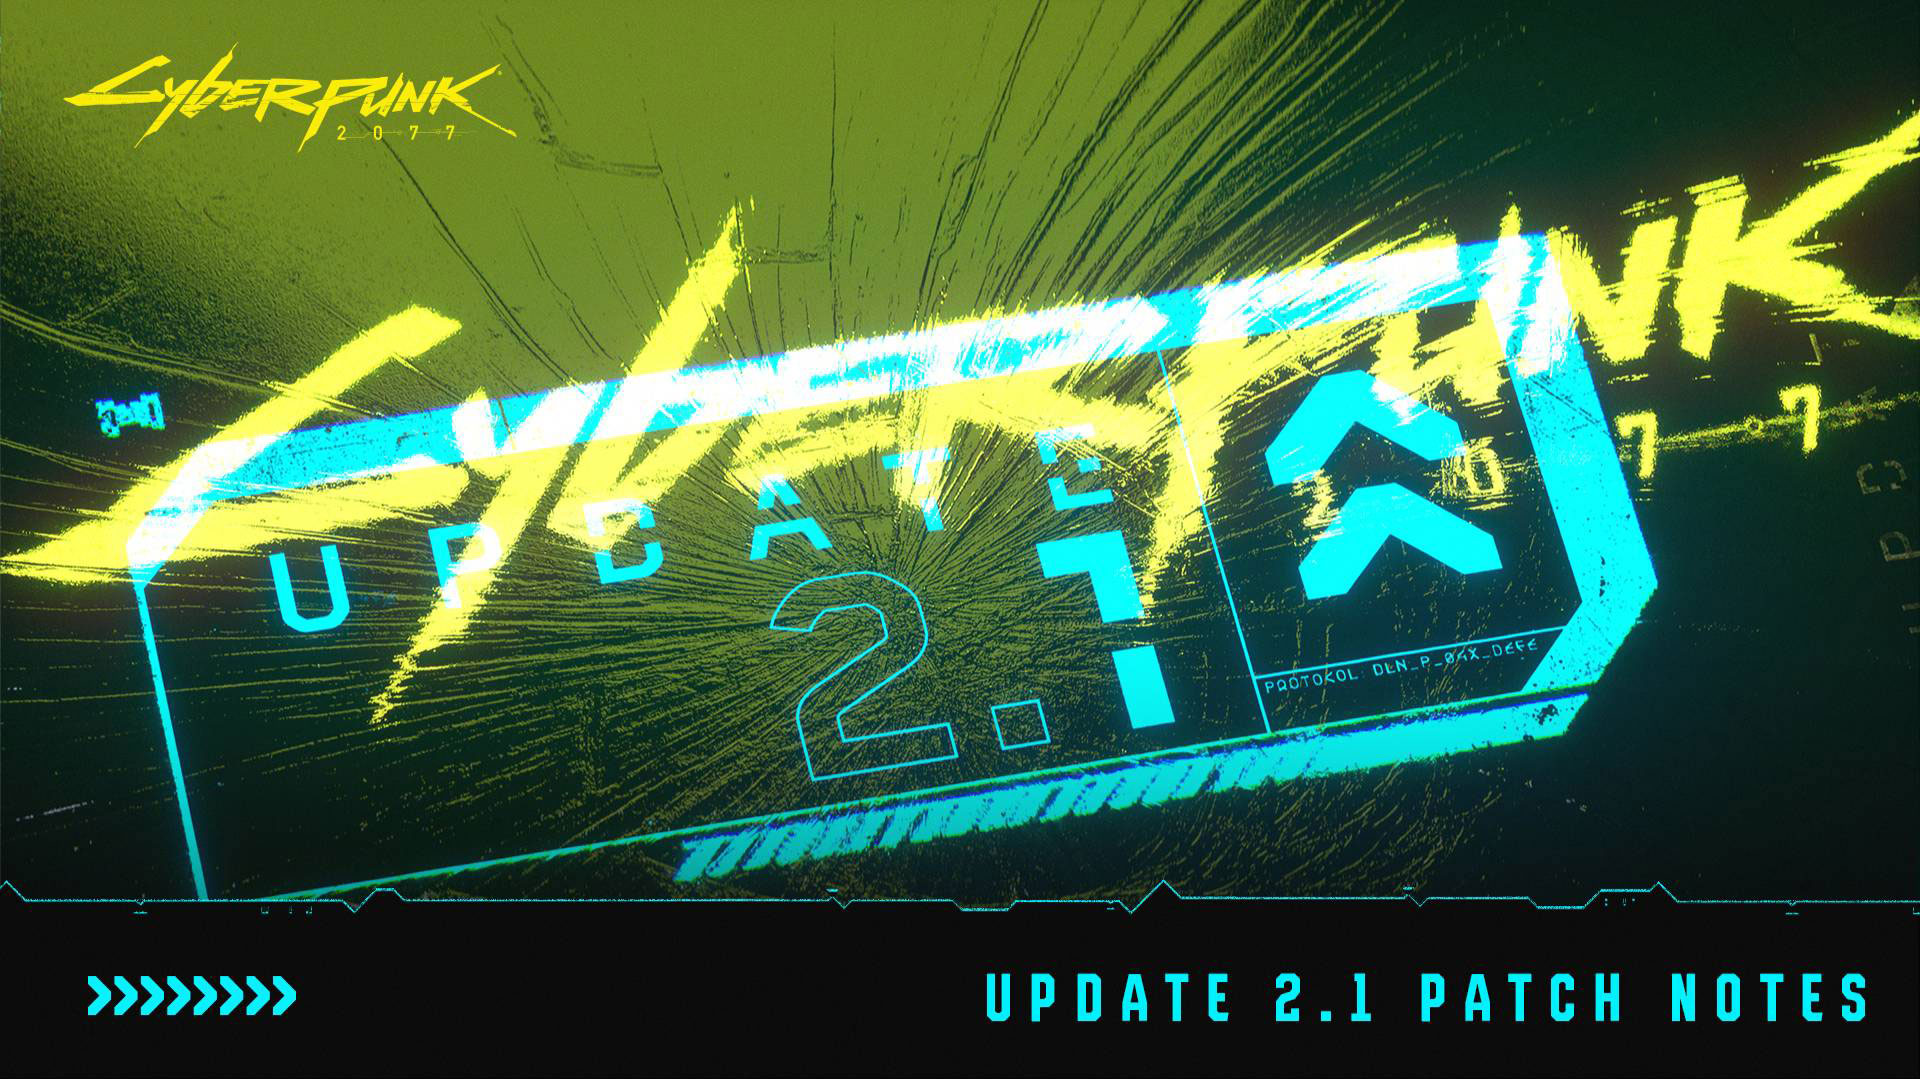 Cyberpunk 2077 Update 2.1 arrives on December 5